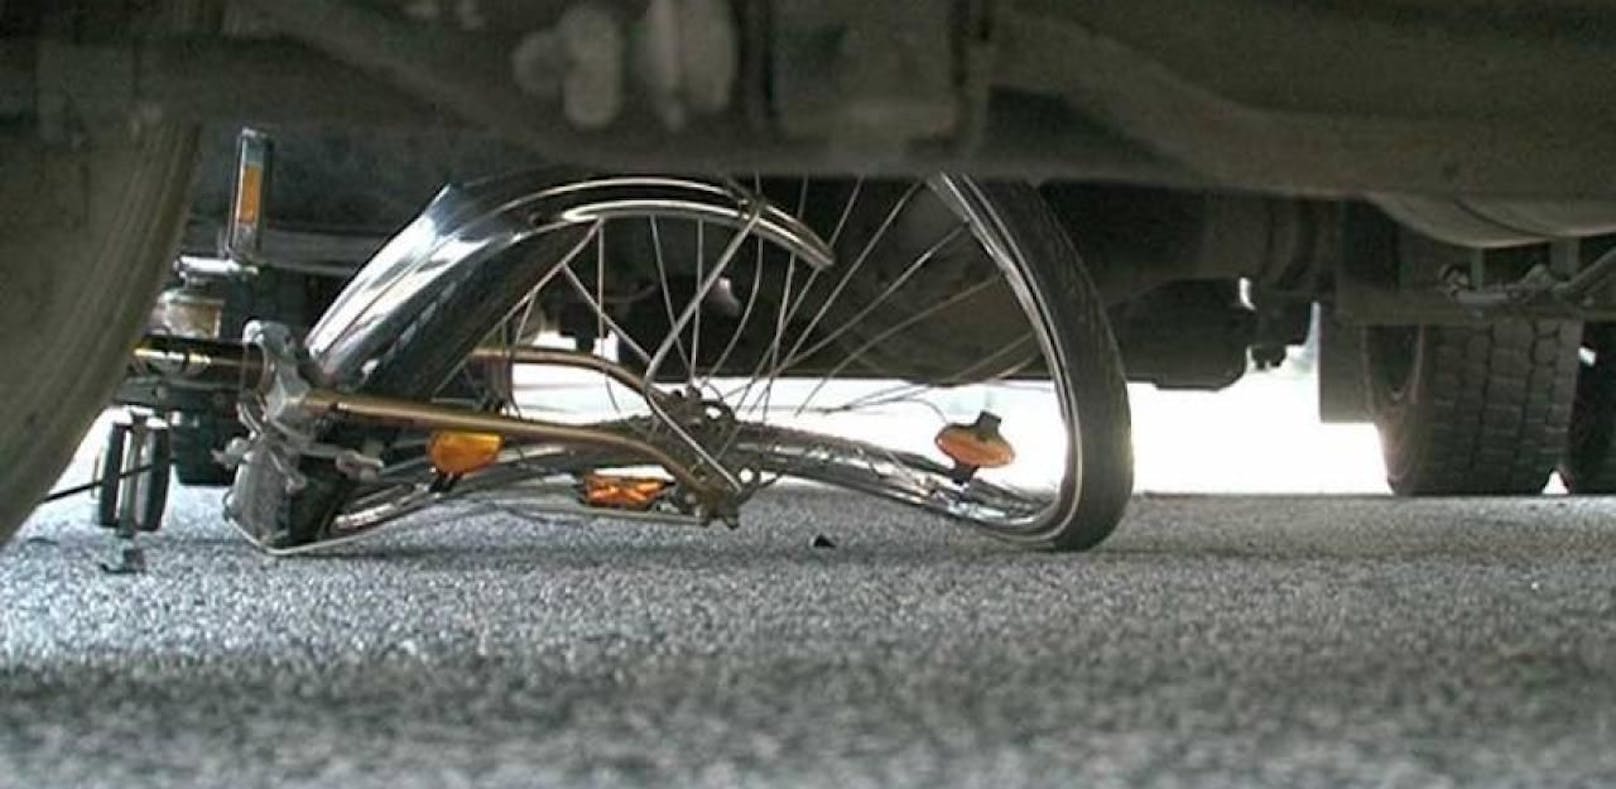 Eien Radlerin wurde von einem Autofahrer geschlagen und gefesselt.